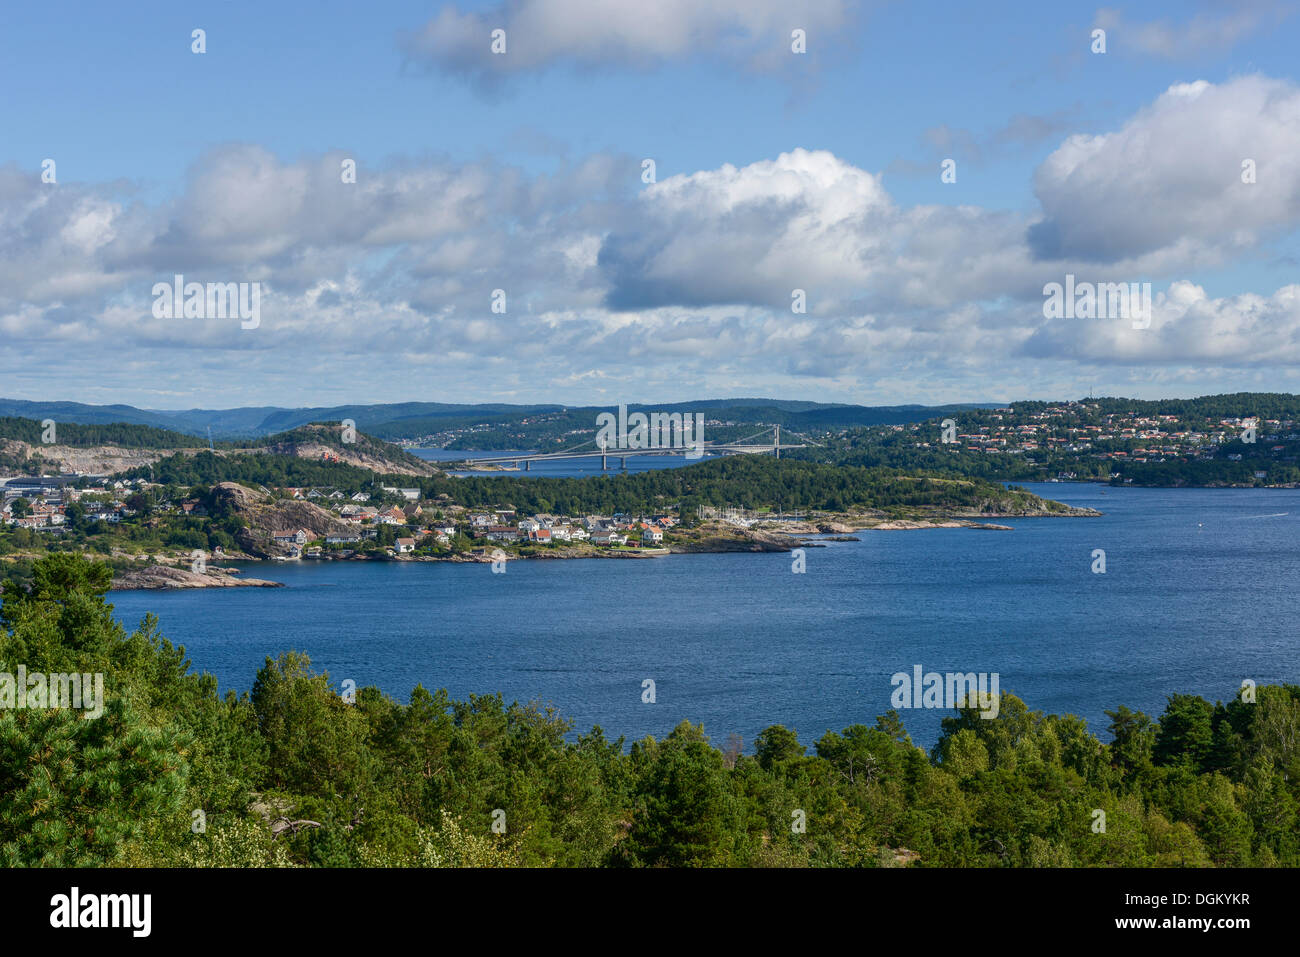 View from Odderøya island Odderøya to Kristiansand, Kristiansand/  Süd-Norwegen, Vest-Agder, Southern Norway, Norway Stock Photo - Alamy